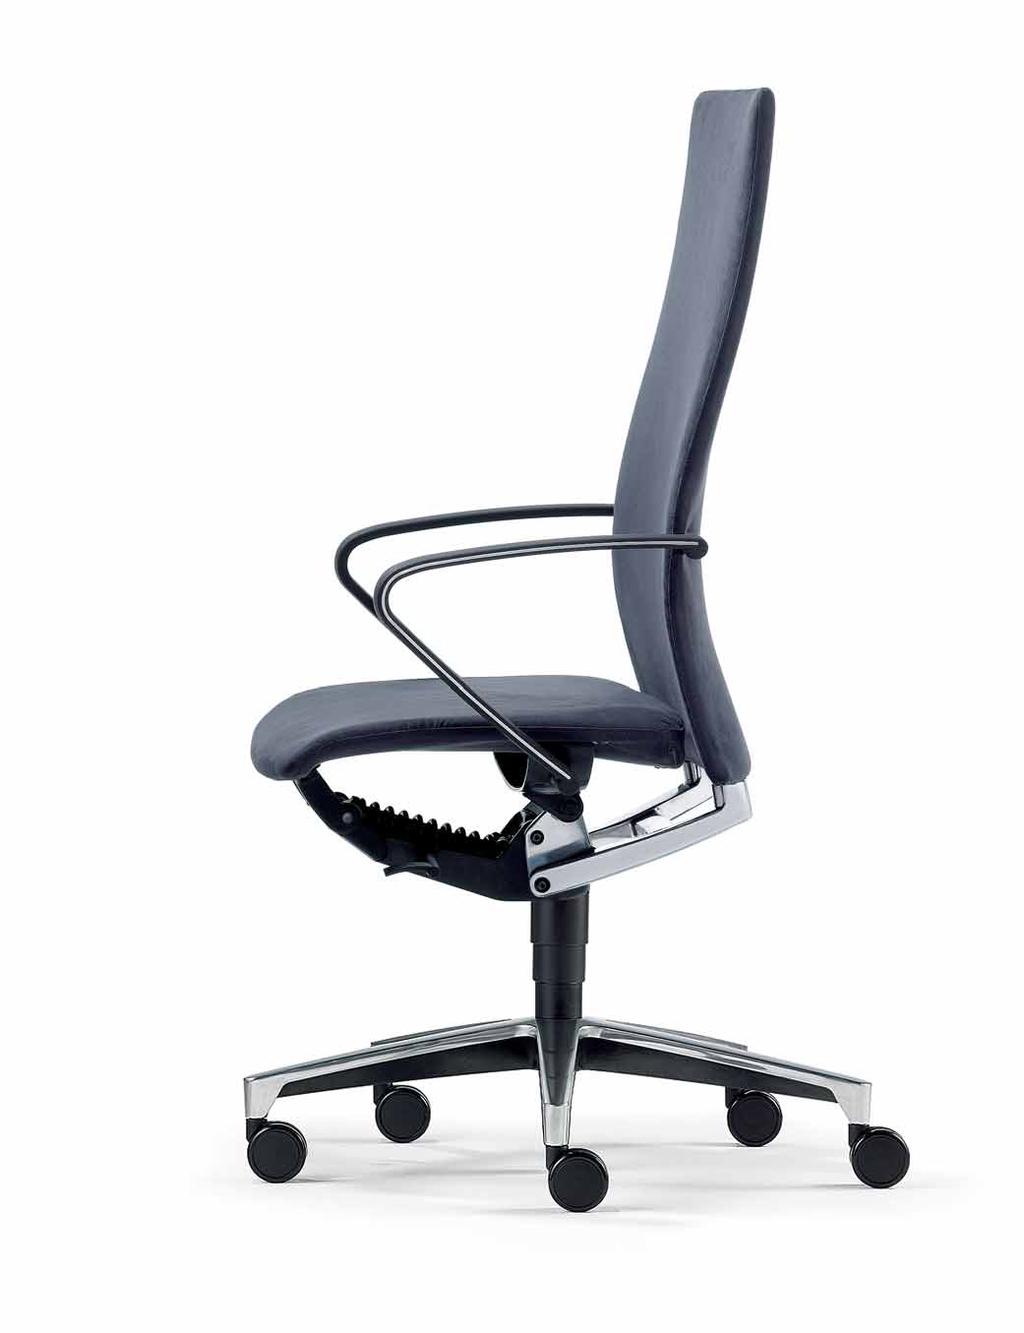 Klöber Ciello. Der erste Stuhl mit DLX.